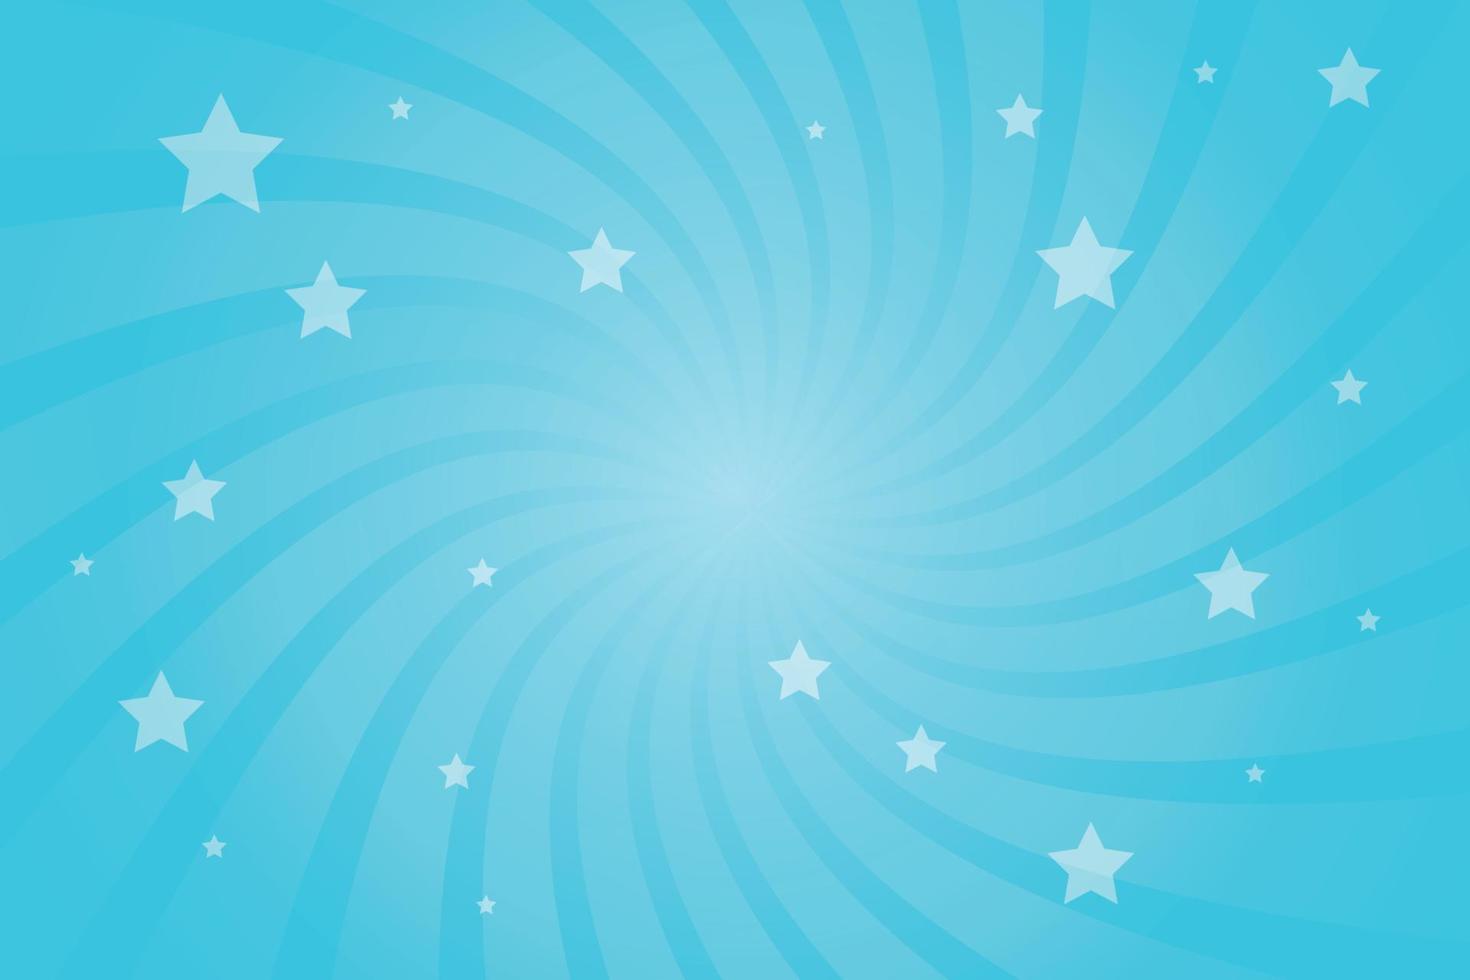 vectorillustratie voor swirl ontwerp. helix rotatie stralen. feestelijke lichte achtergrond van een wervelende swirl-spiraal met sterren. roterende zonnestralen in een komische stijl. vector illustratie